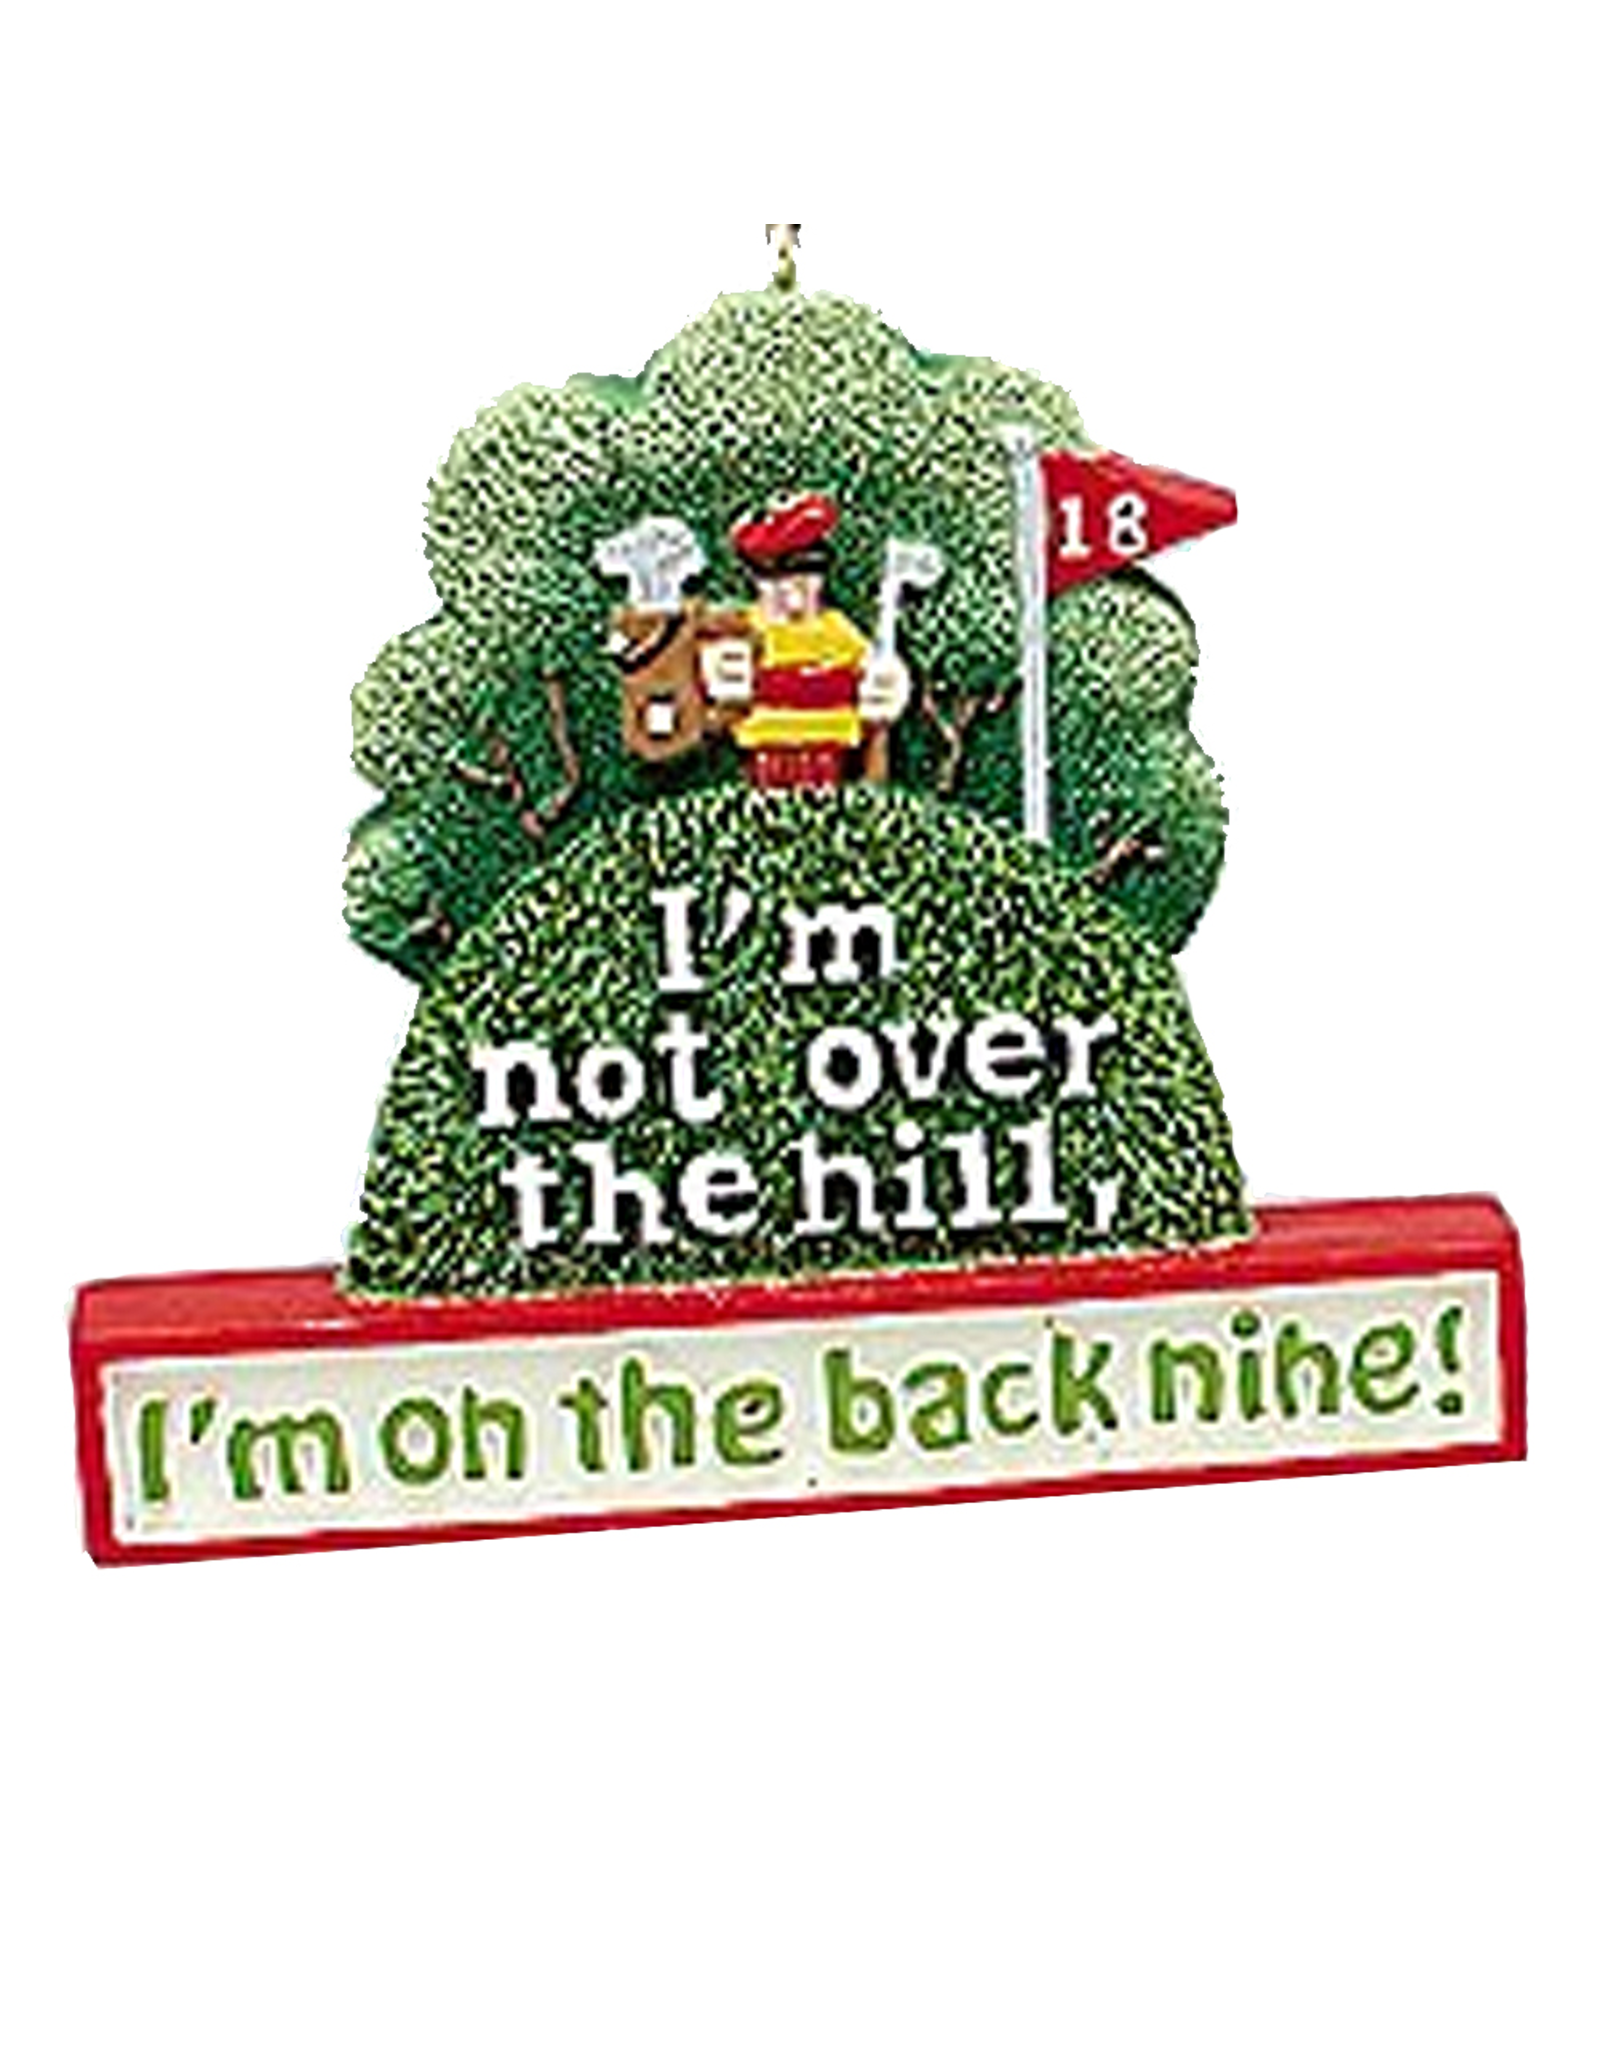 Kurt Adler Golfers Ornament Im Not Over the Hill Im on the Back Nine